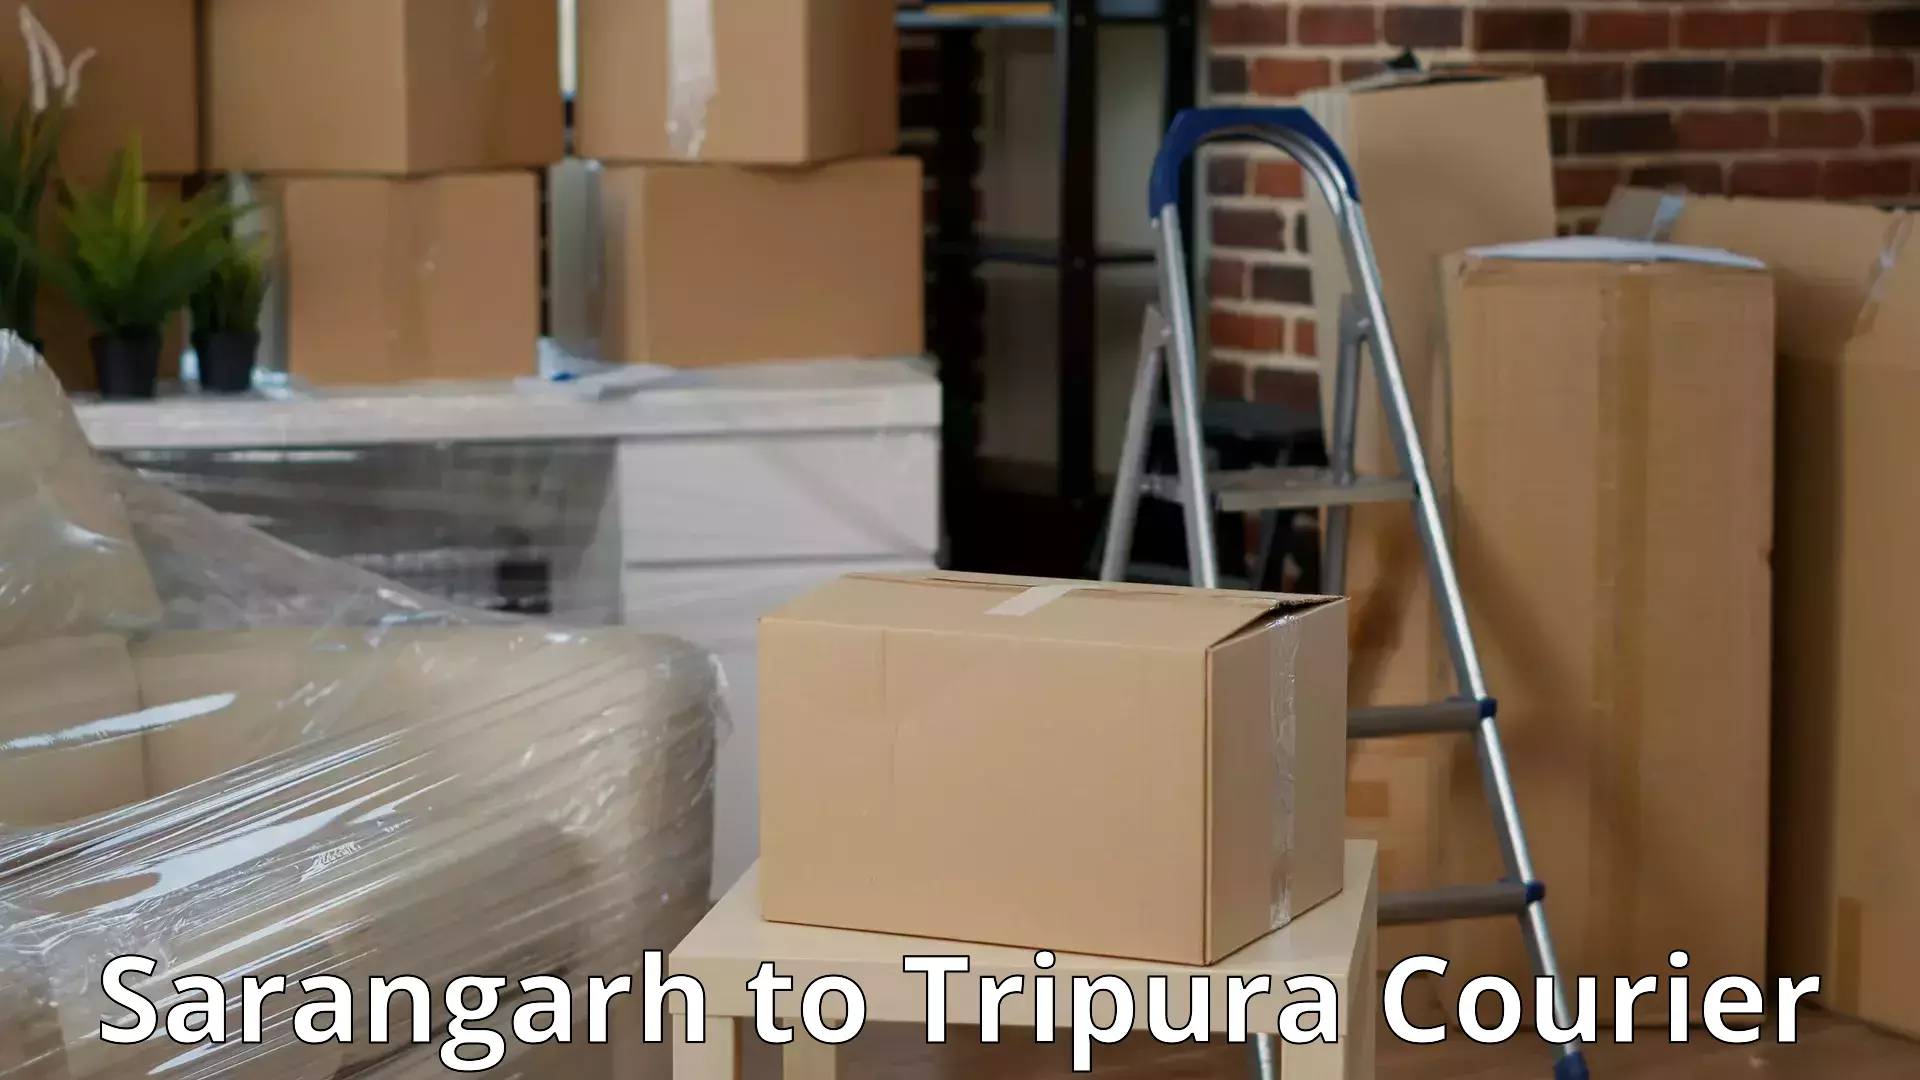 Furniture transport services Sarangarh to Manu Bazar